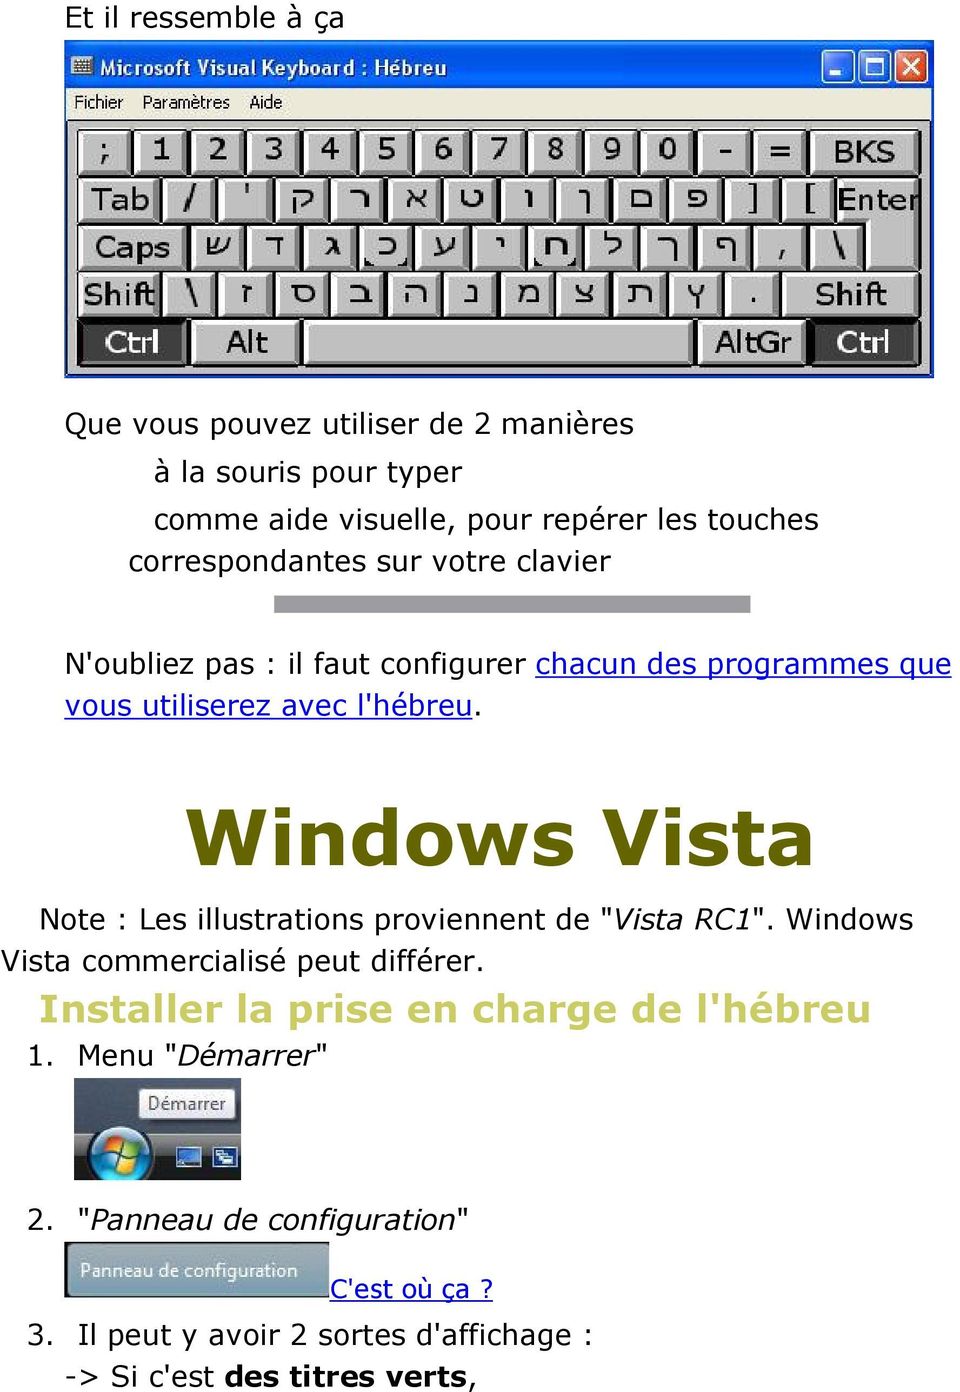 Windows Vista Note : Les illustrations proviennent de "Vista RC1". Windows Vista commercialisé peut différer.